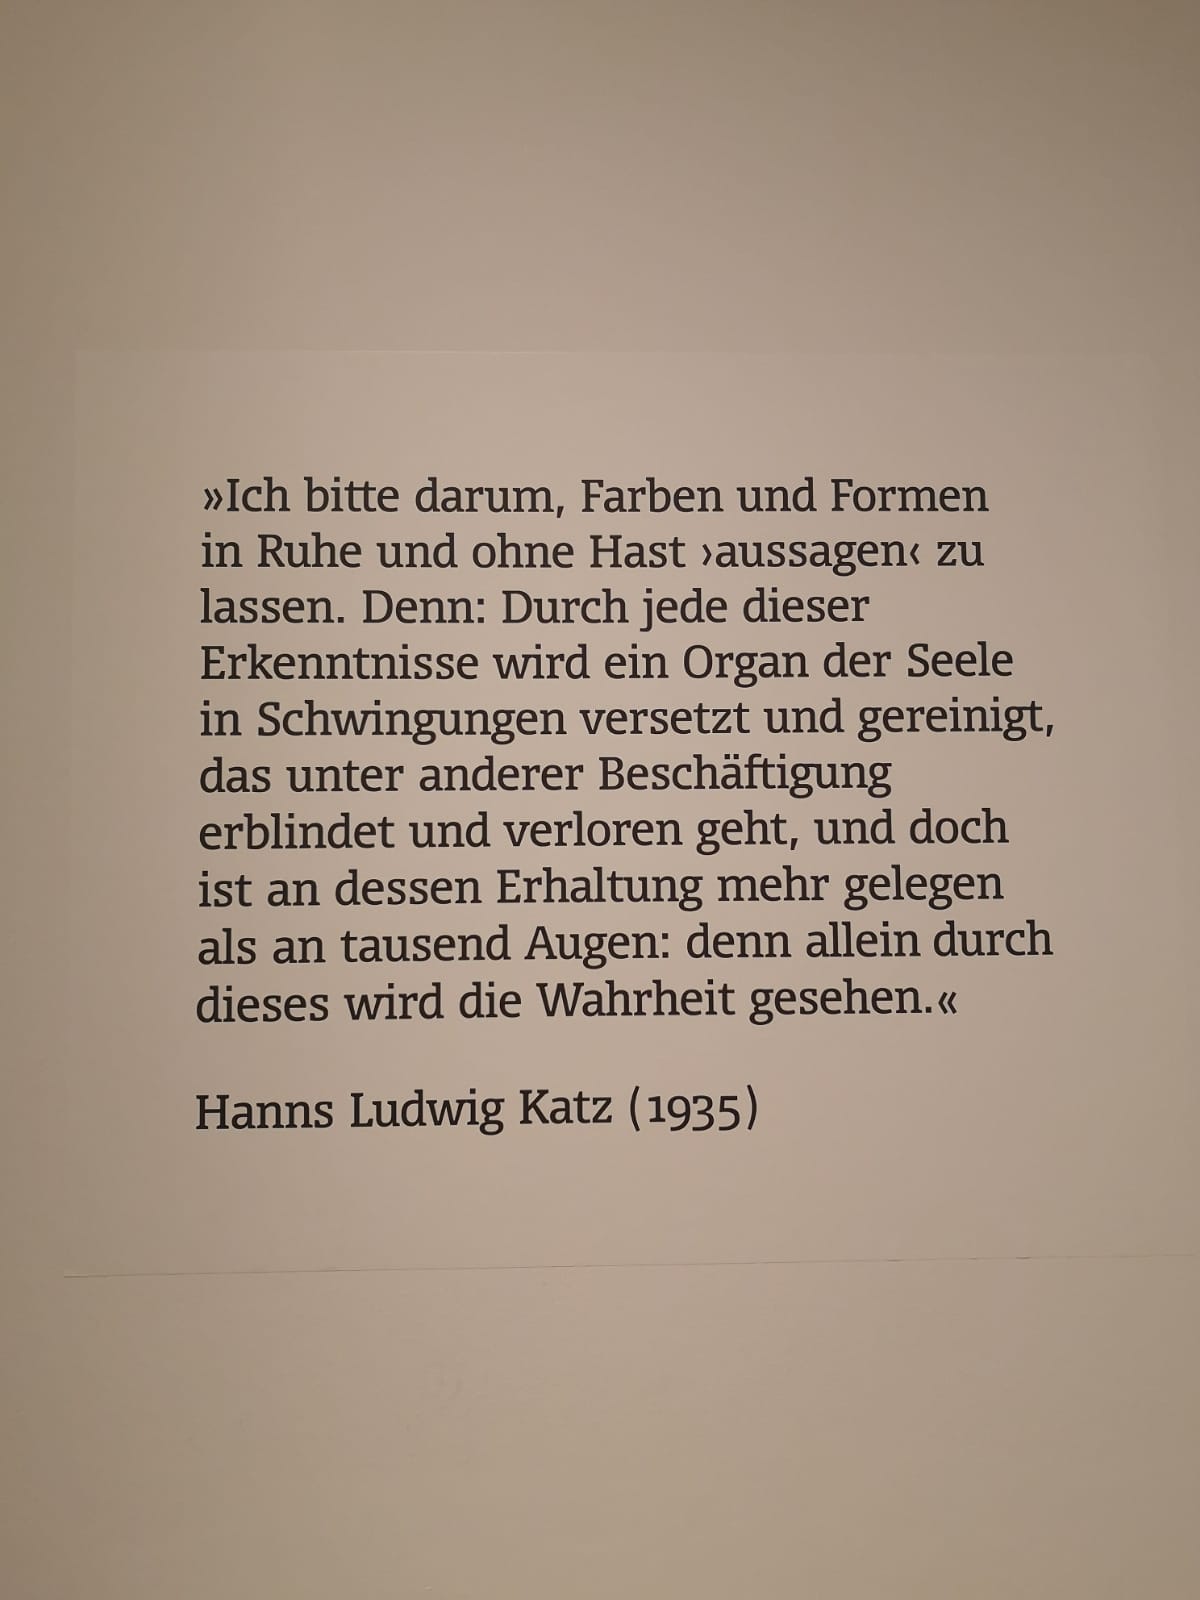 Hanns Ludwig Katz (1935): Ich bitte darum...